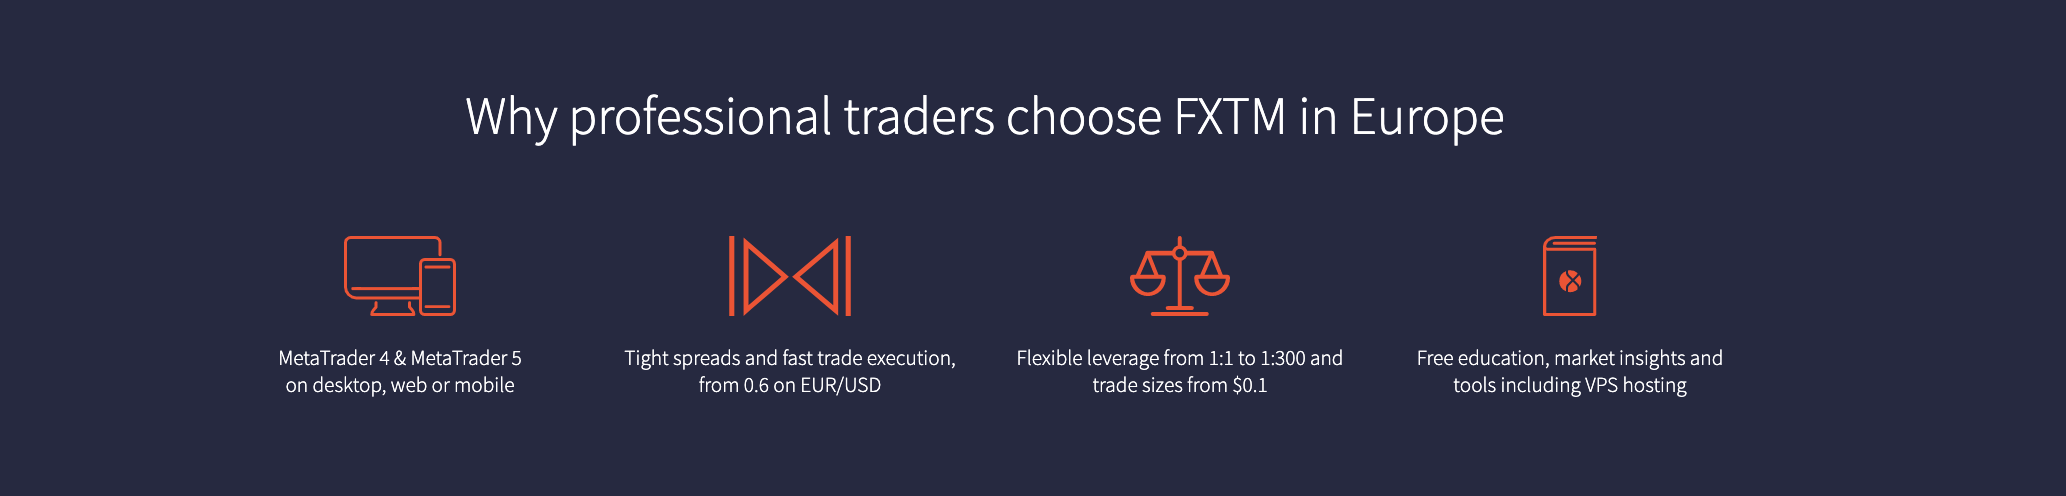 Les avantages du trading avec FXTM